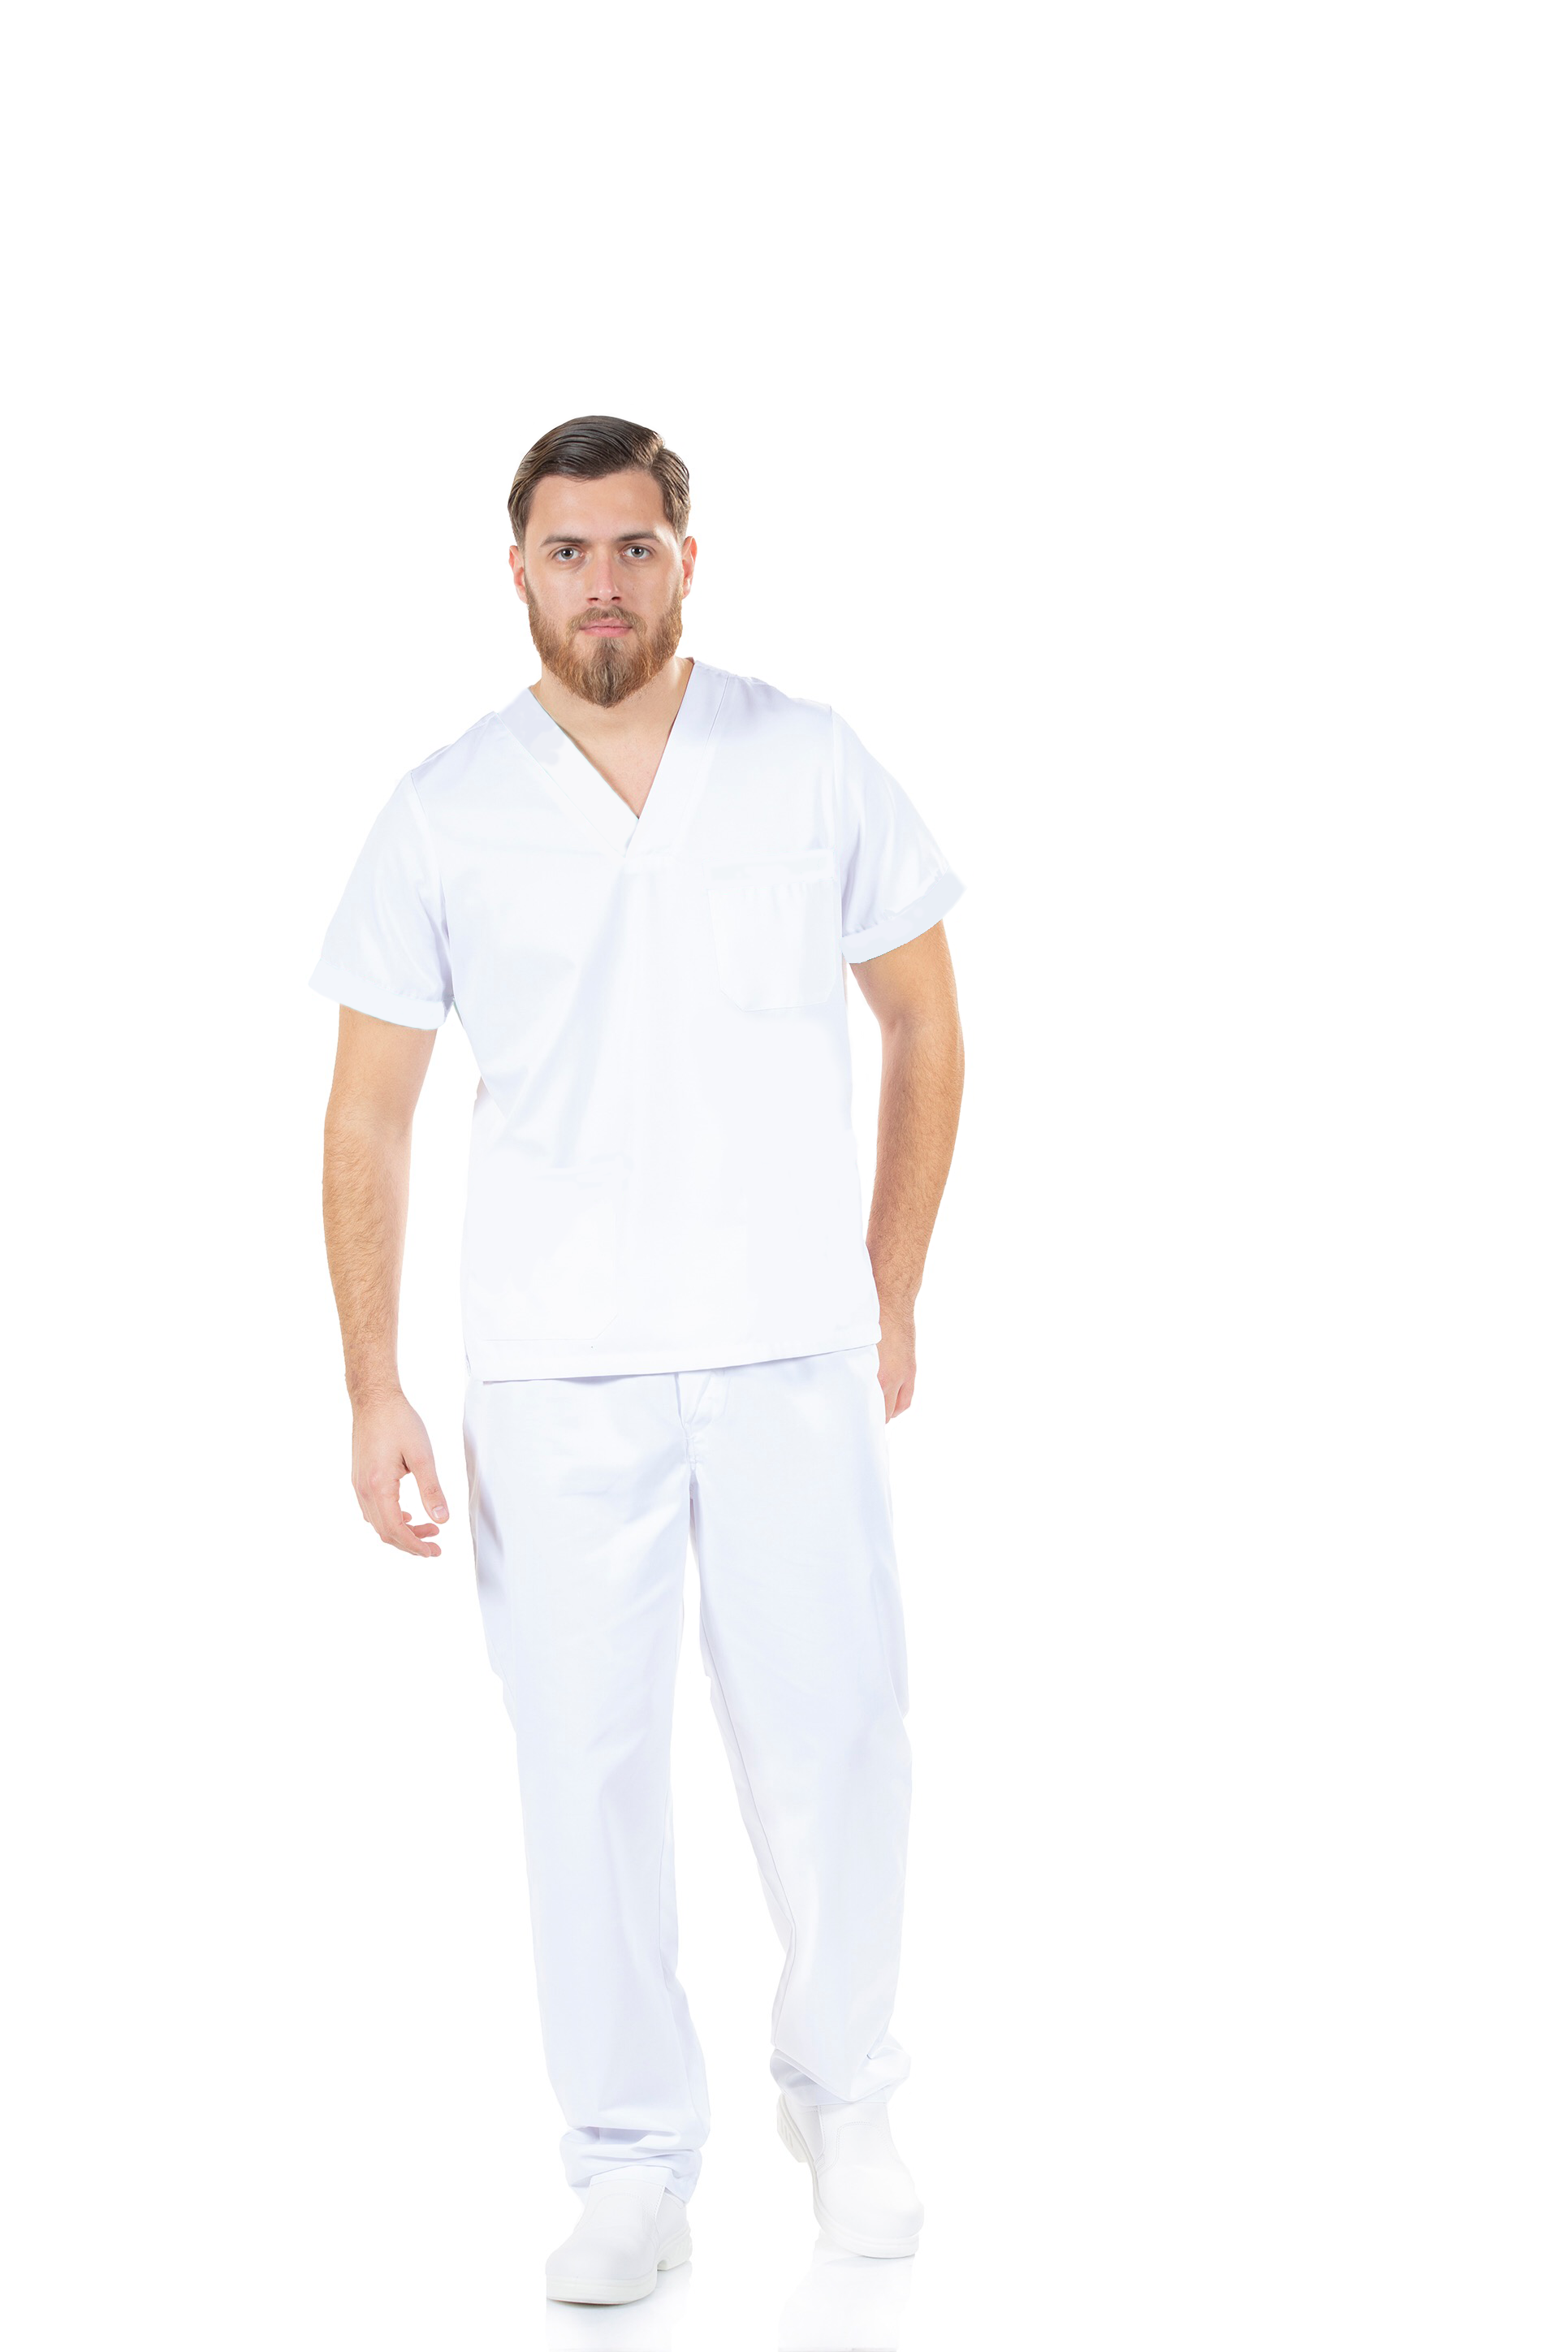 Pijama quirúrgico blanco unisex